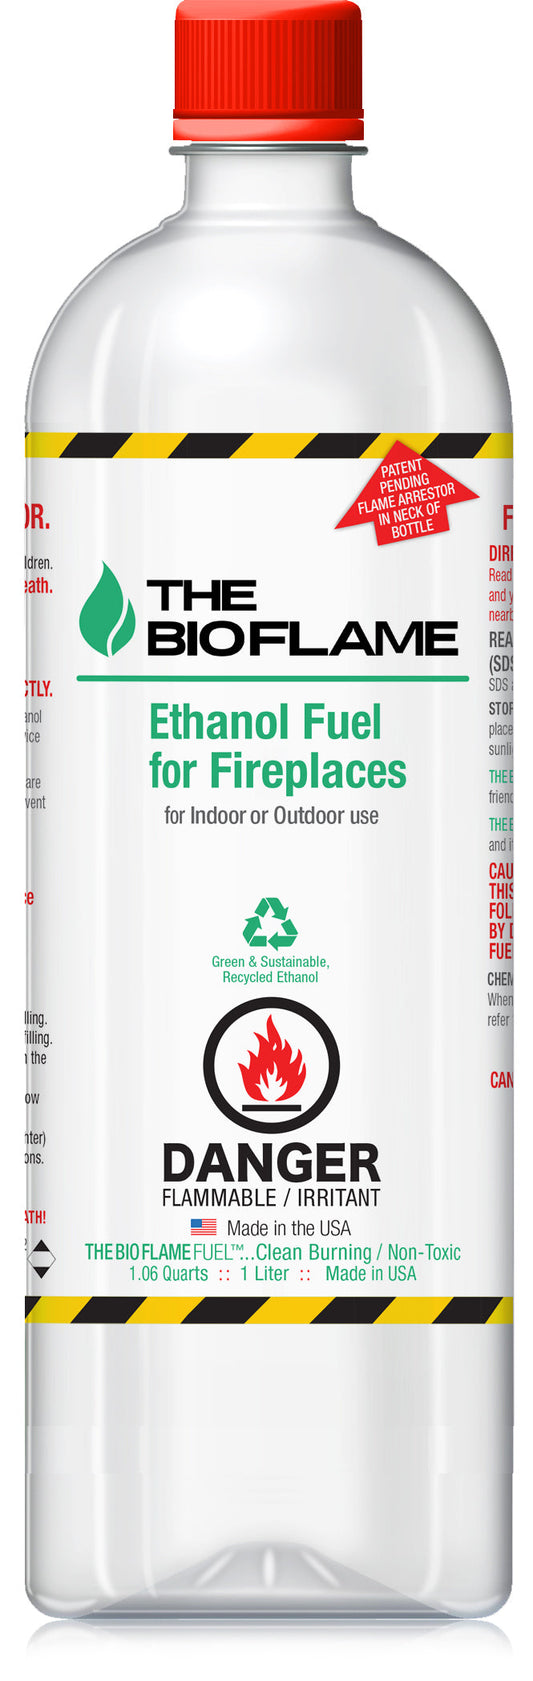 FUELS Bioethanol (1l bottle) Gel Fuel